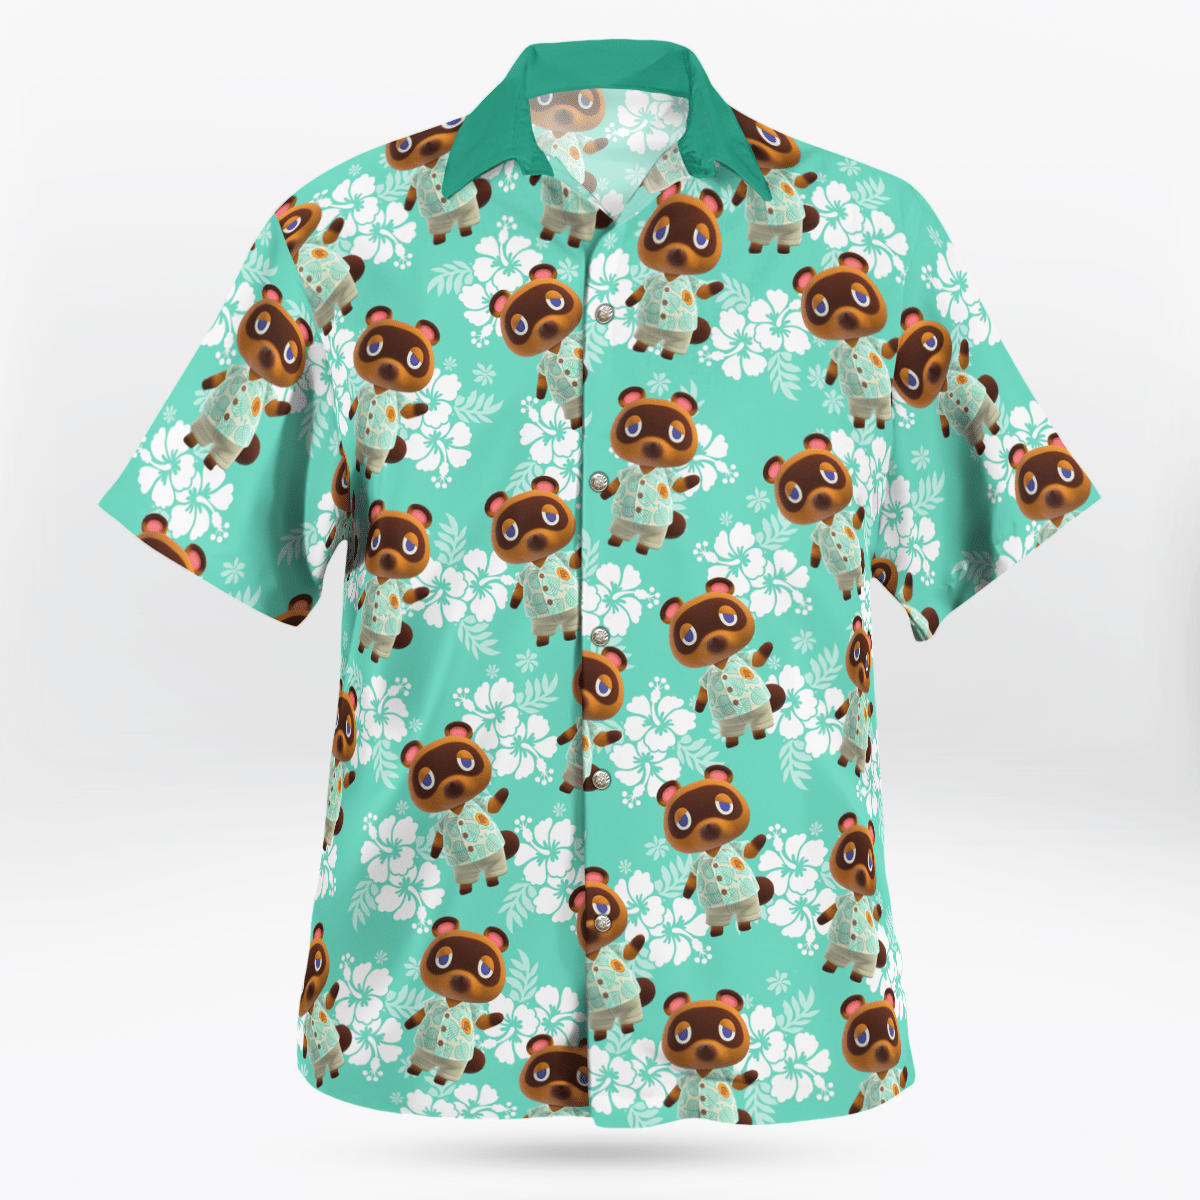 Tom Nook Hawaiian shirt - LIMITED EDITION